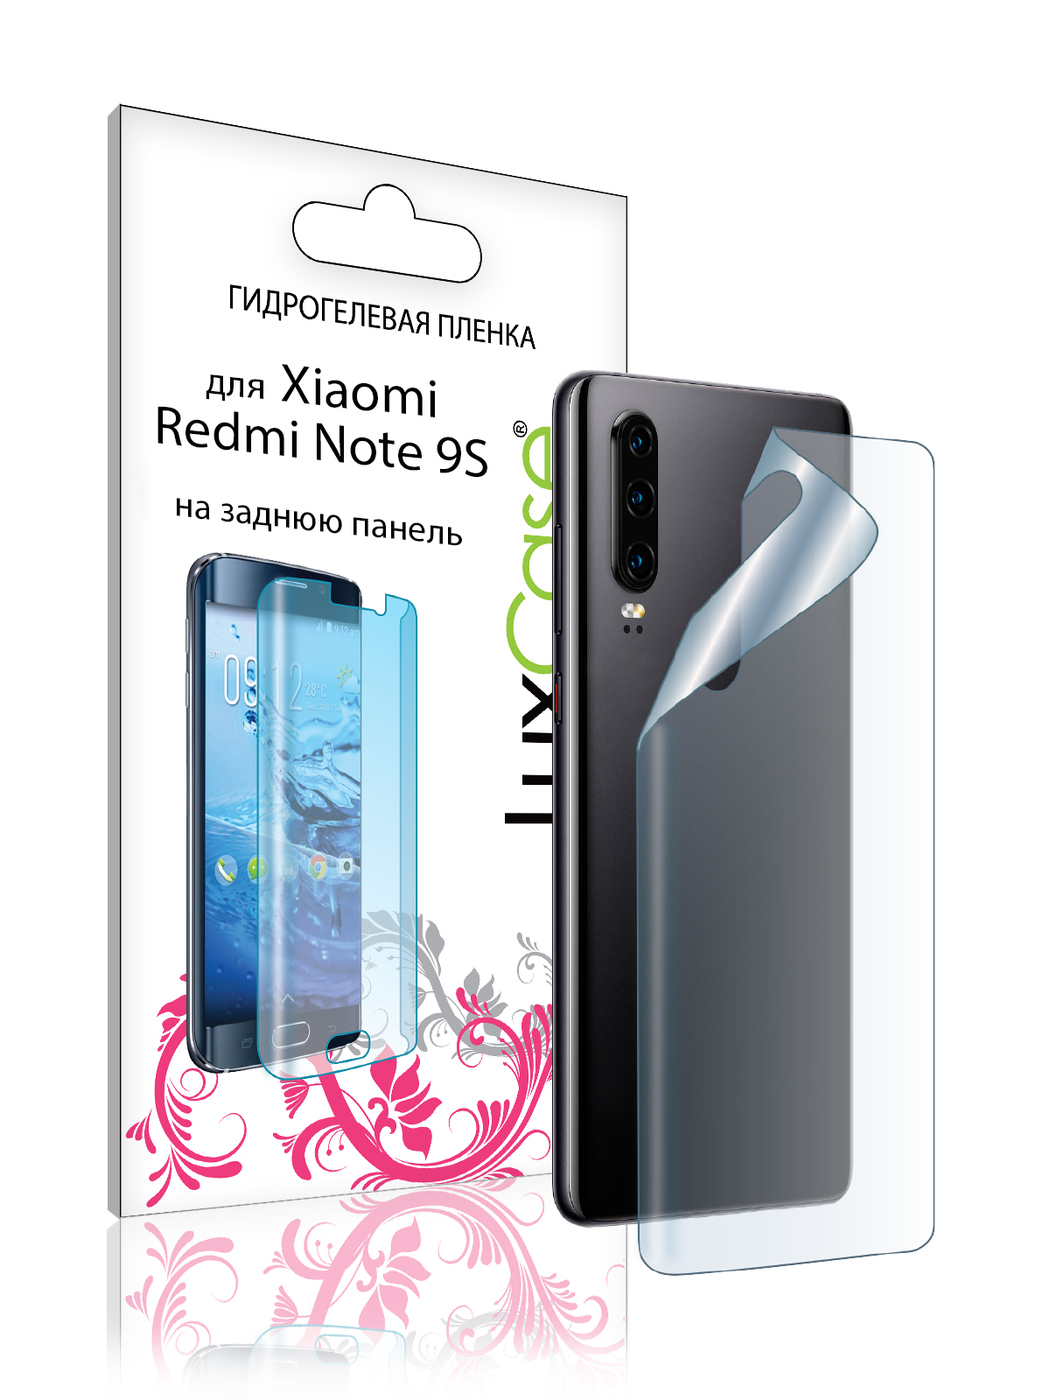 Пленка на заднюю панель LuxCase для Xiaomi Redmi Note 9S 0.14mm Transparent 86089 жидкий чехол с блестками дитя заката на xiaomi redmi note 9s сяоми редми нот 9s